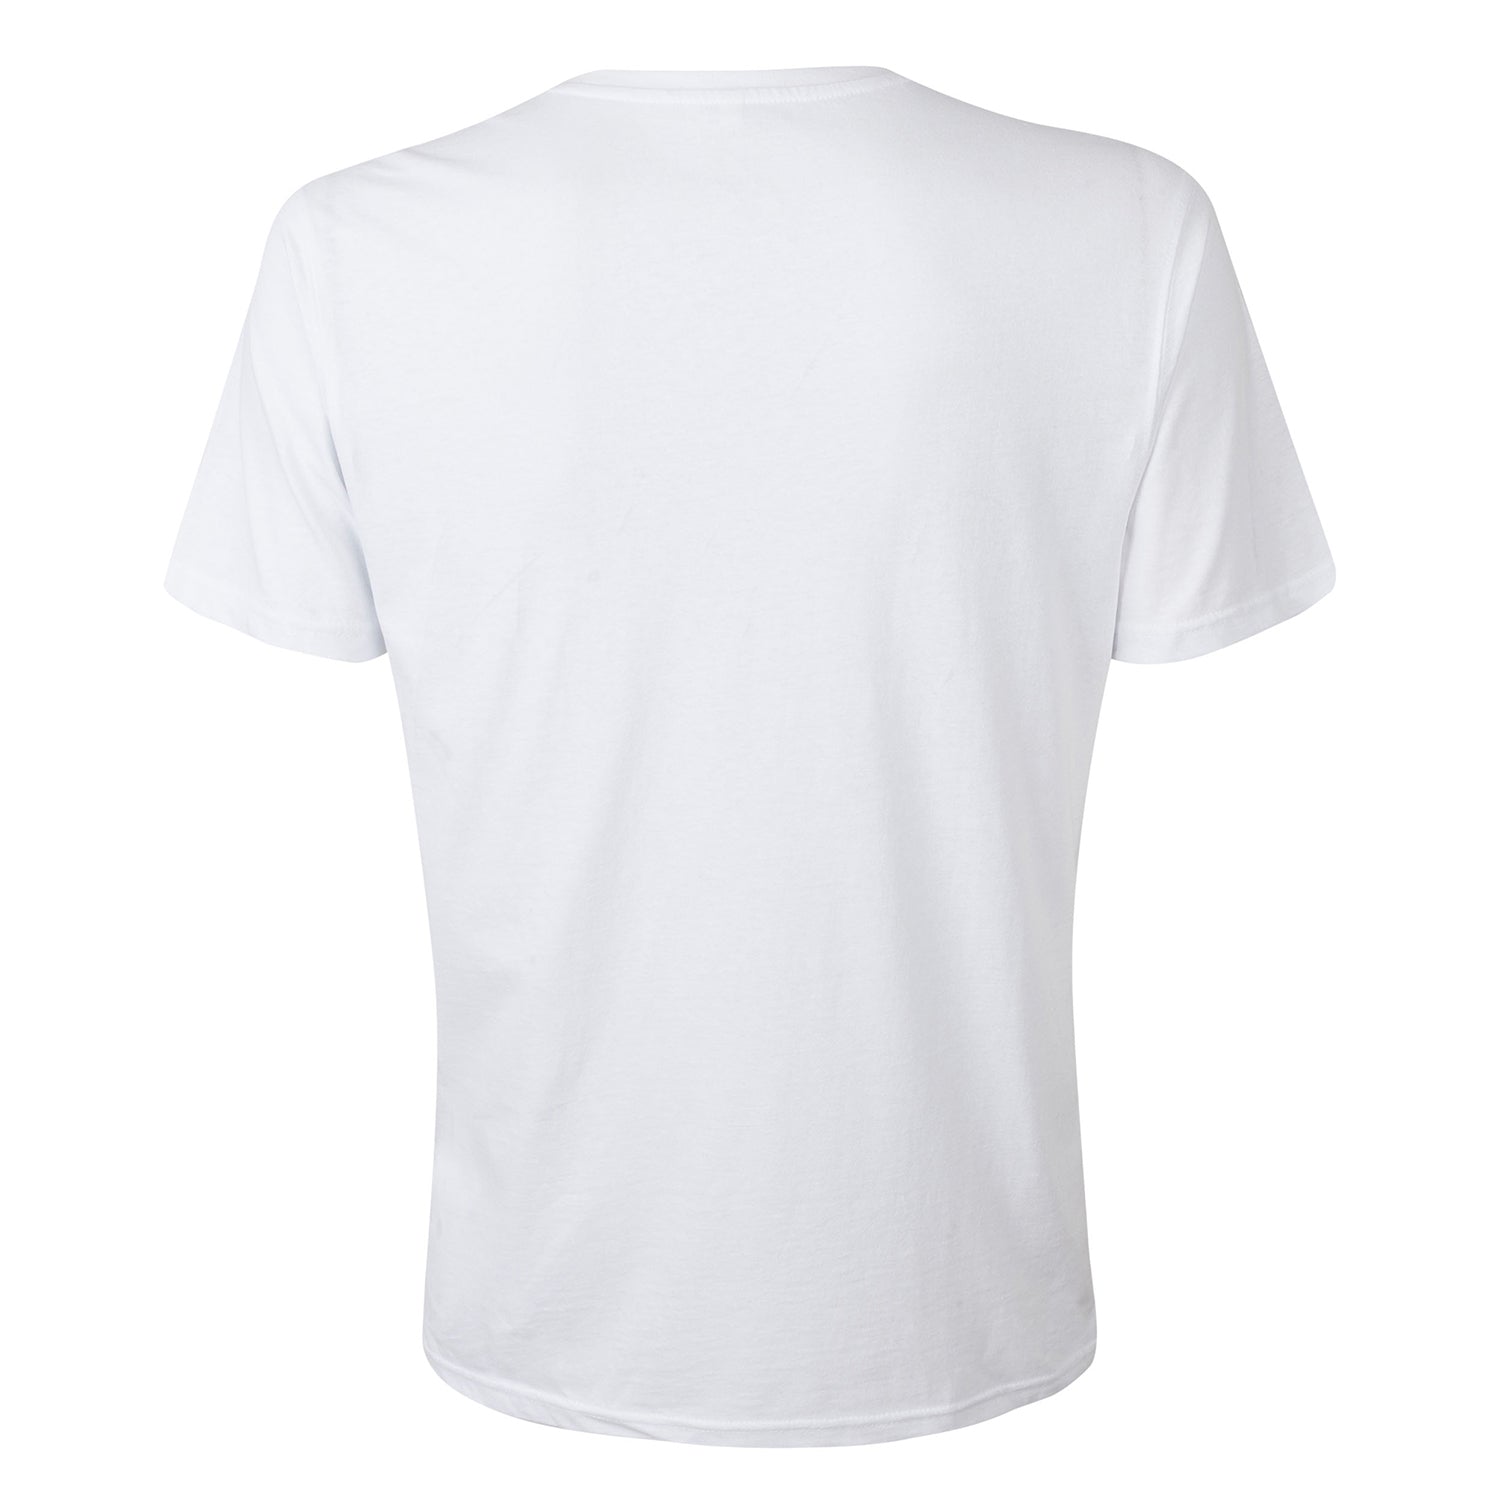 Diablo Logo White T-Shirt - Back View